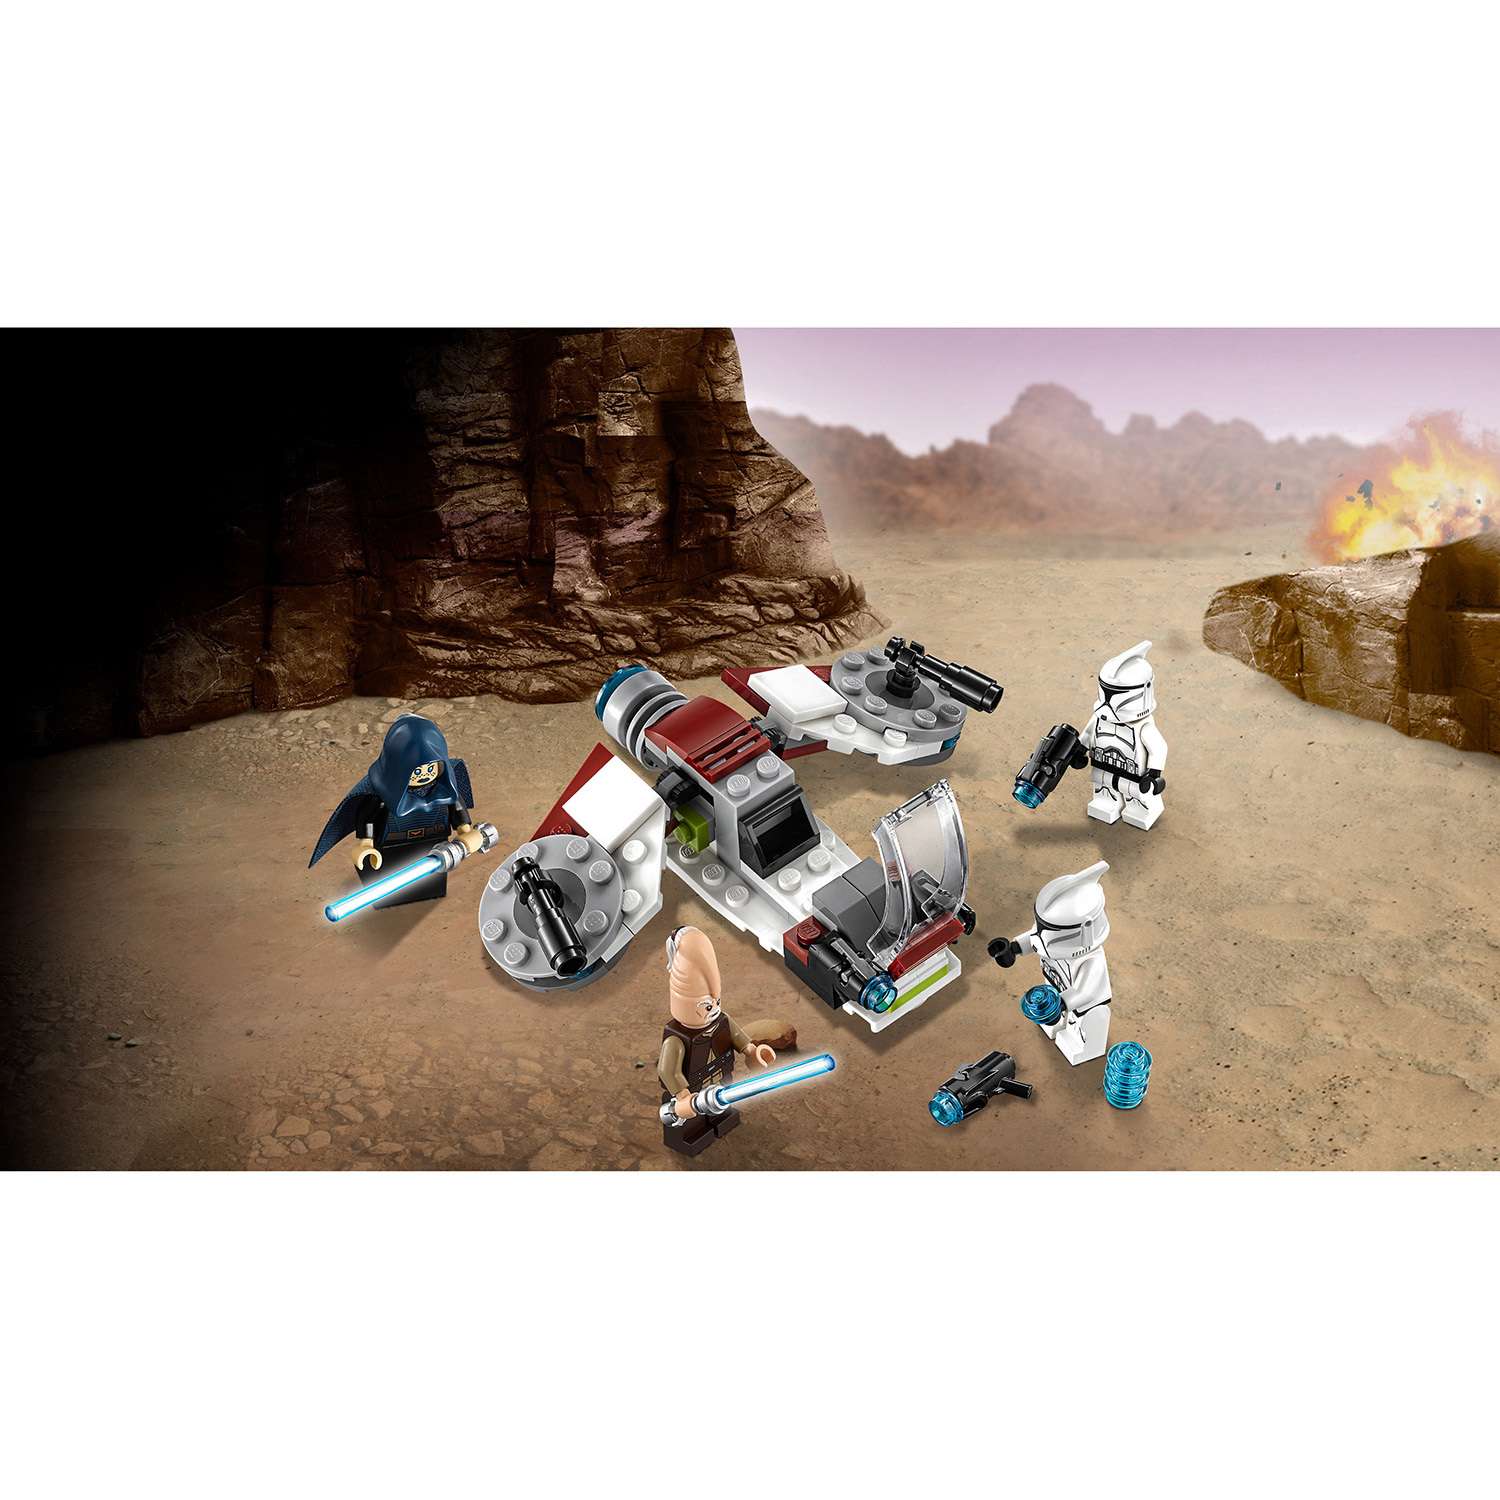 Конструктор LEGO Star Wars Боевой набор джедаев и клонов-пехотинцев (75206) - фото 5